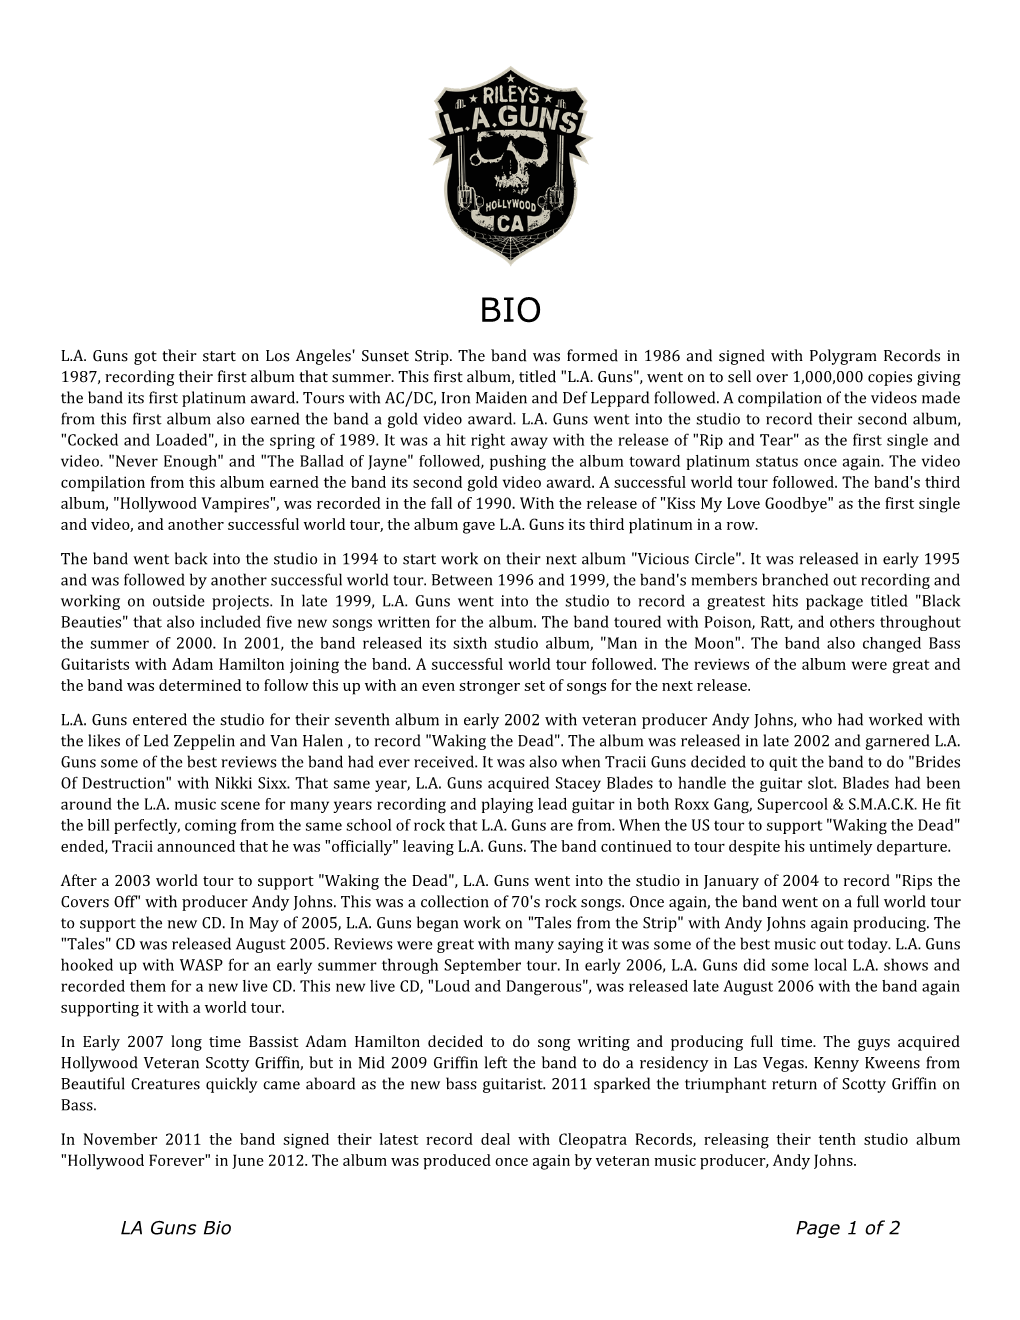 LA Guns Bio Page 1 of 2